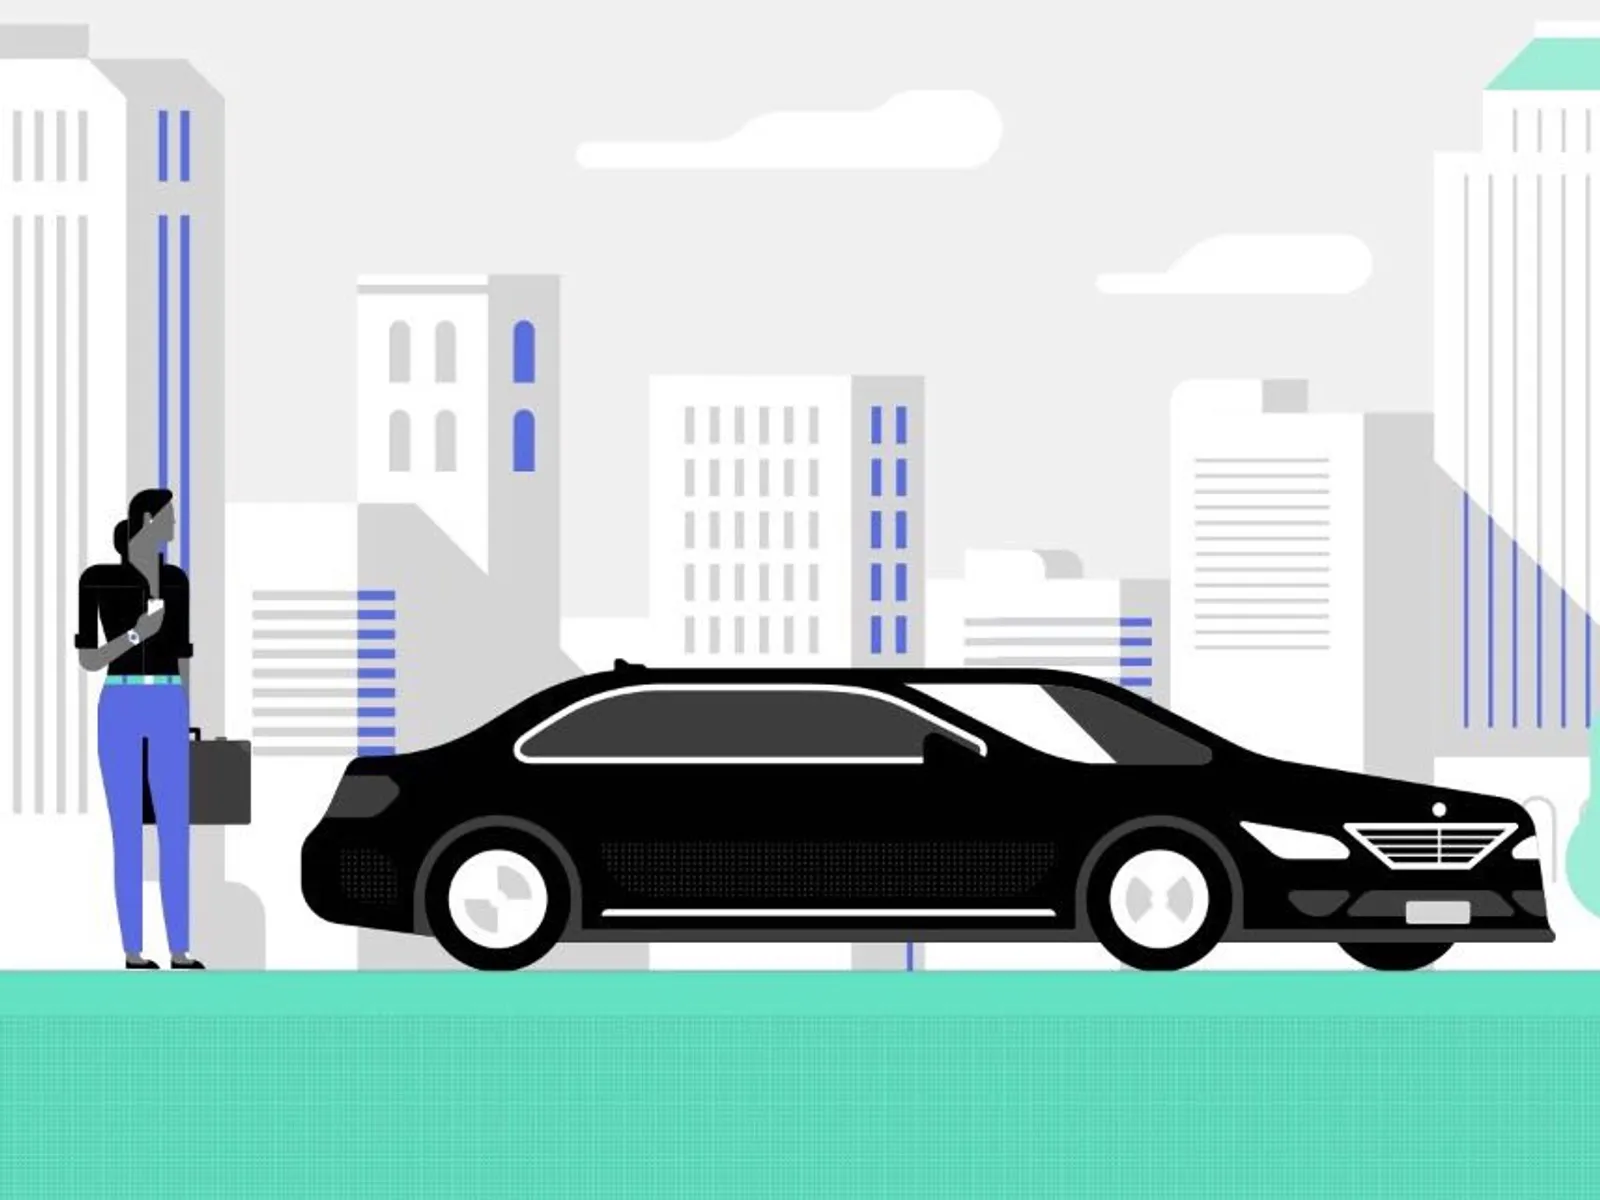 Peraturan Baru Dari Uber, Tertinggal Barang Kena Denda Rp 200.000